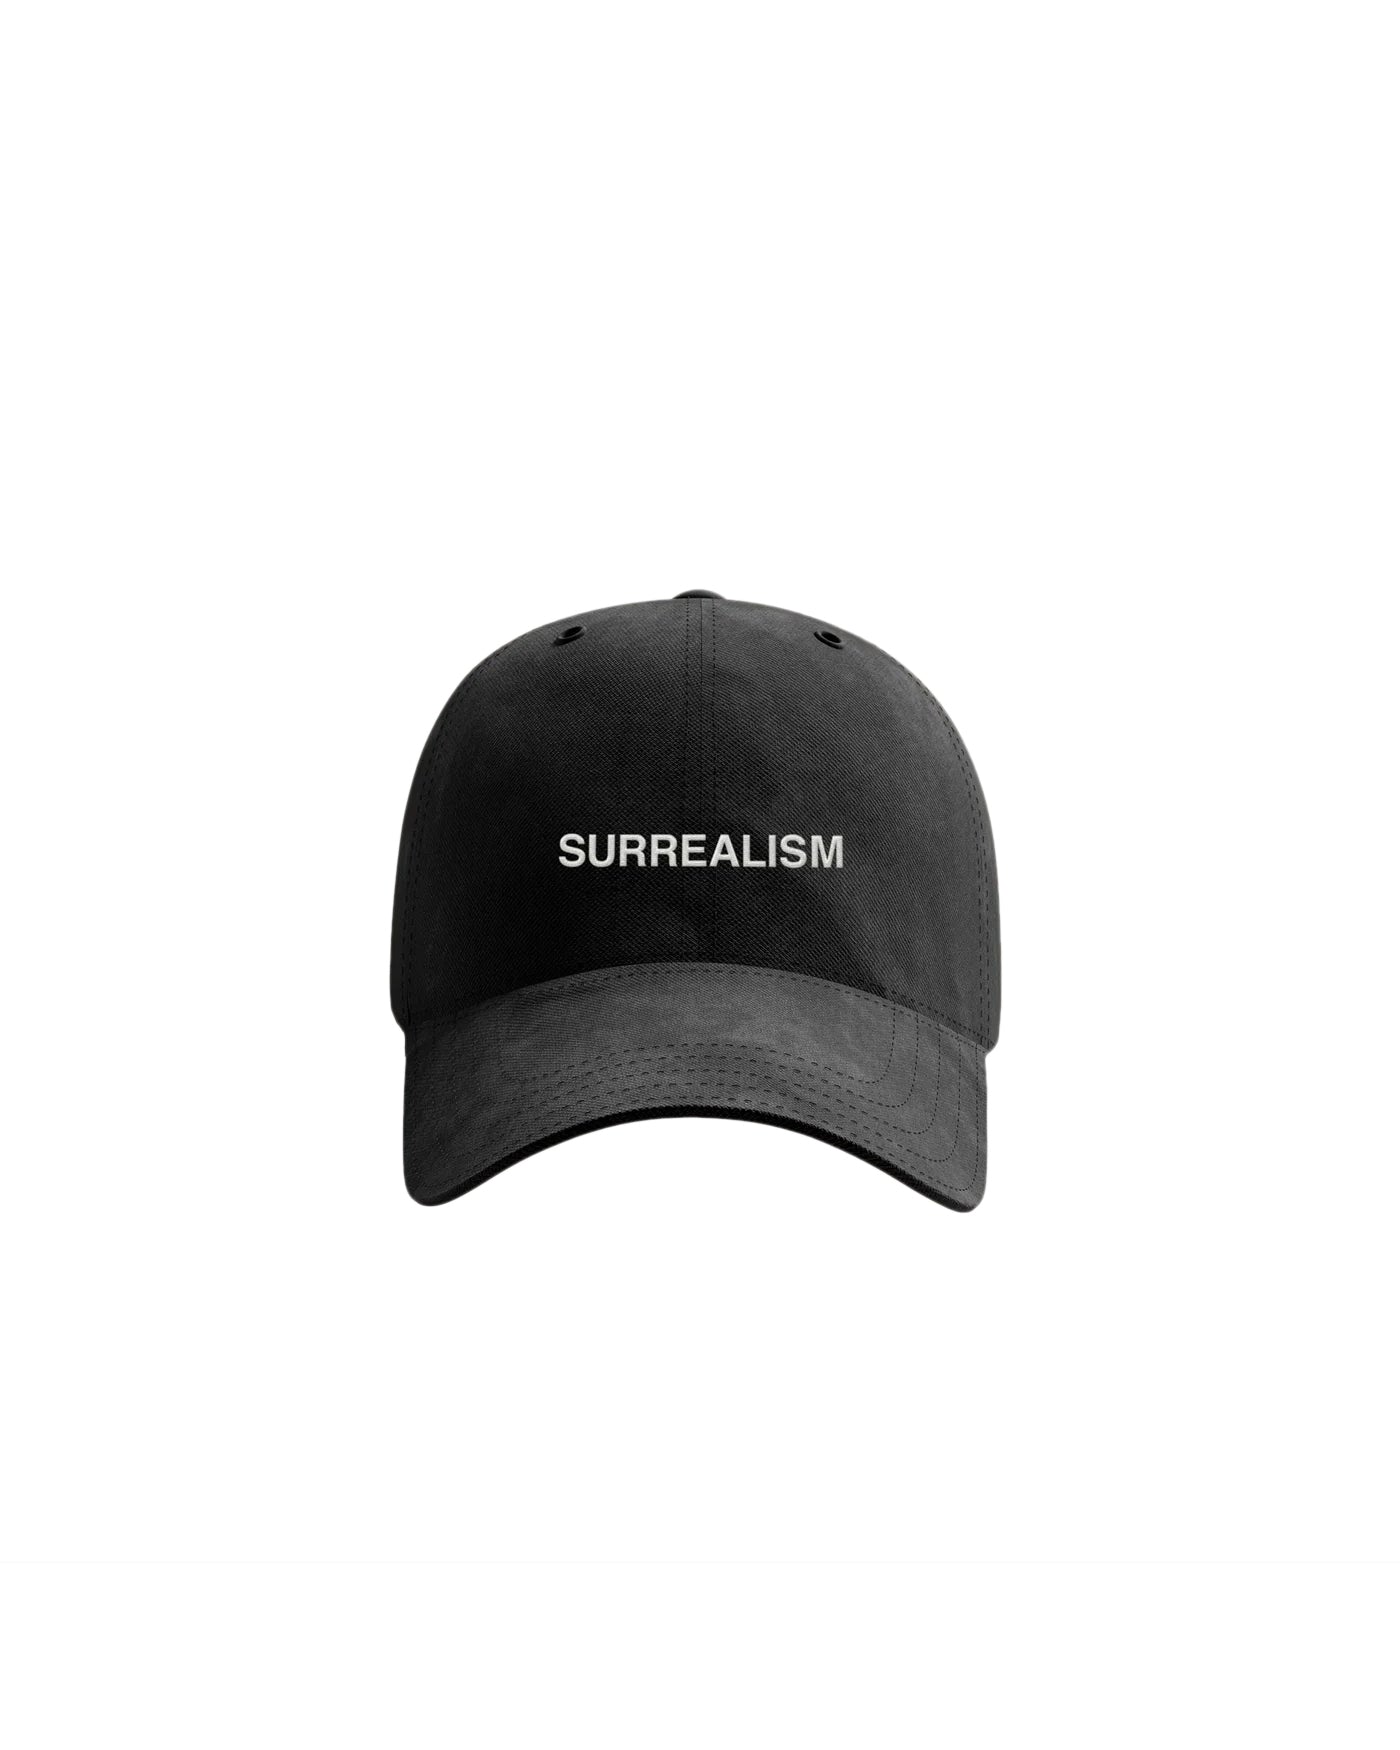 シュルレアリスムのお父さんの帽子